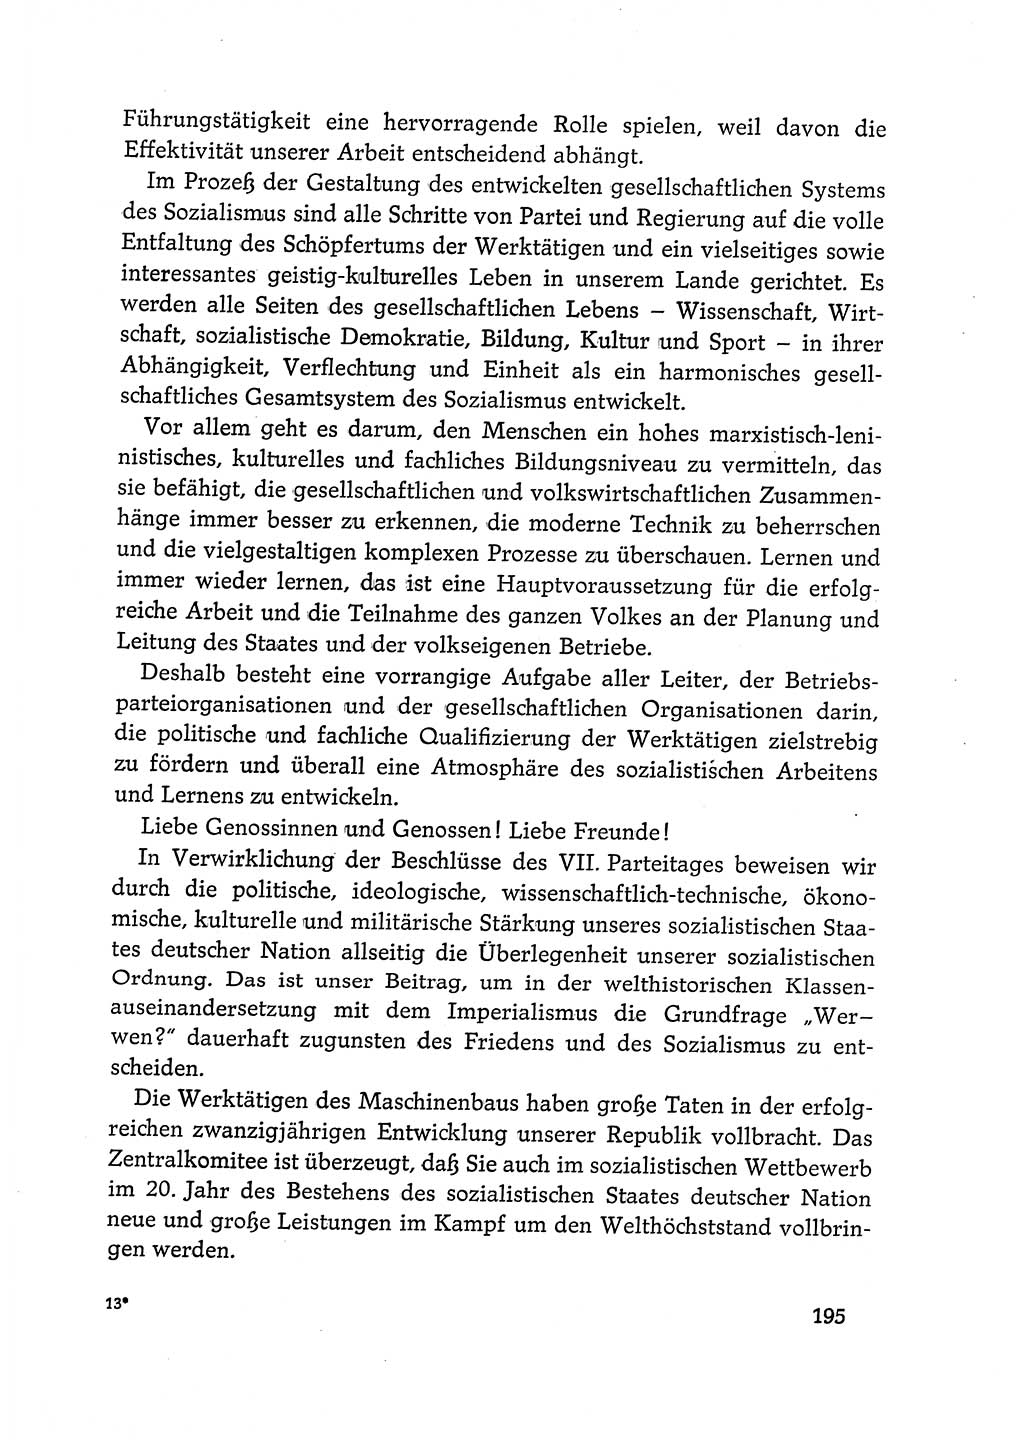 Dokumente der Sozialistischen Einheitspartei Deutschlands (SED) [Deutsche Demokratische Republik (DDR)] 1968-1969, Seite 195 (Dok. SED DDR 1968-1969, S. 195)